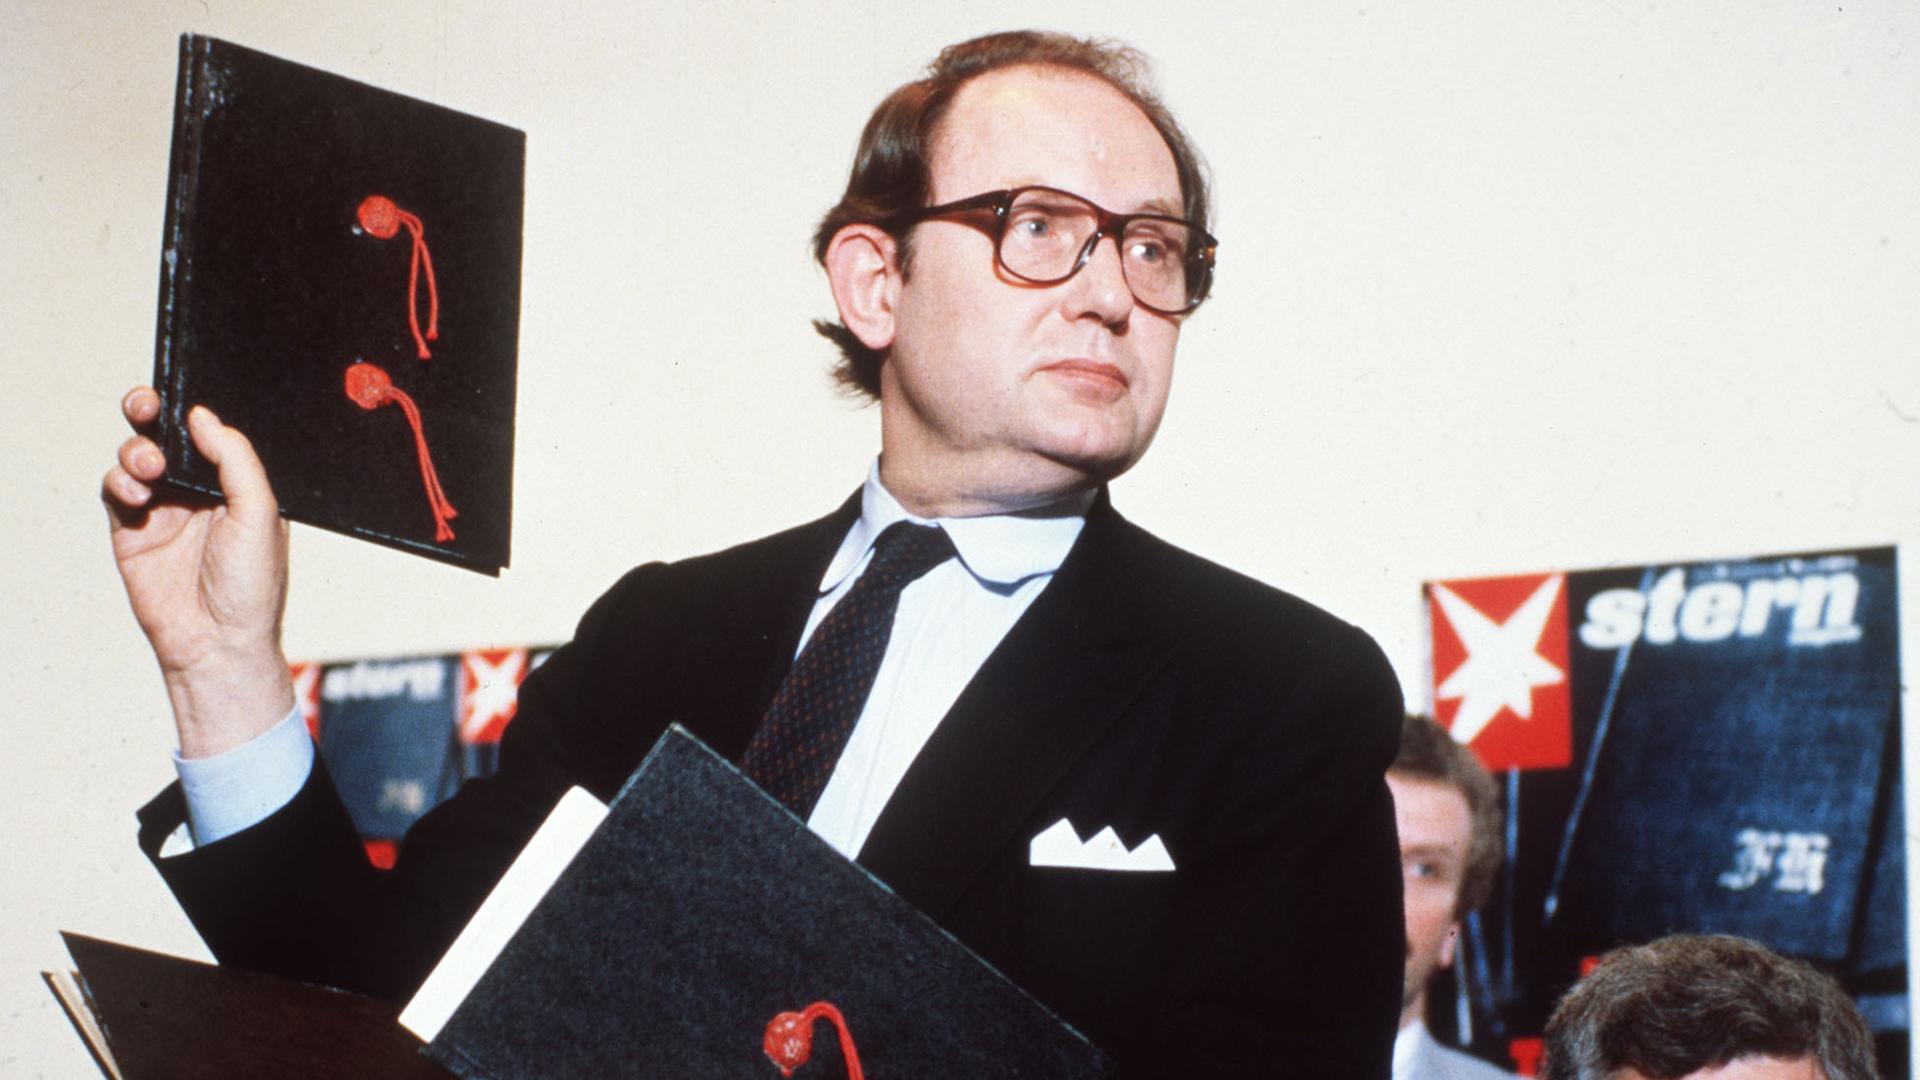 Der Journalist Gerd Heidemann, im schwarzen Anzug mit Krawatte und Einstecktuch, hält eine schwarze Kladde mit zwei roten Siegeln in die Höhe.